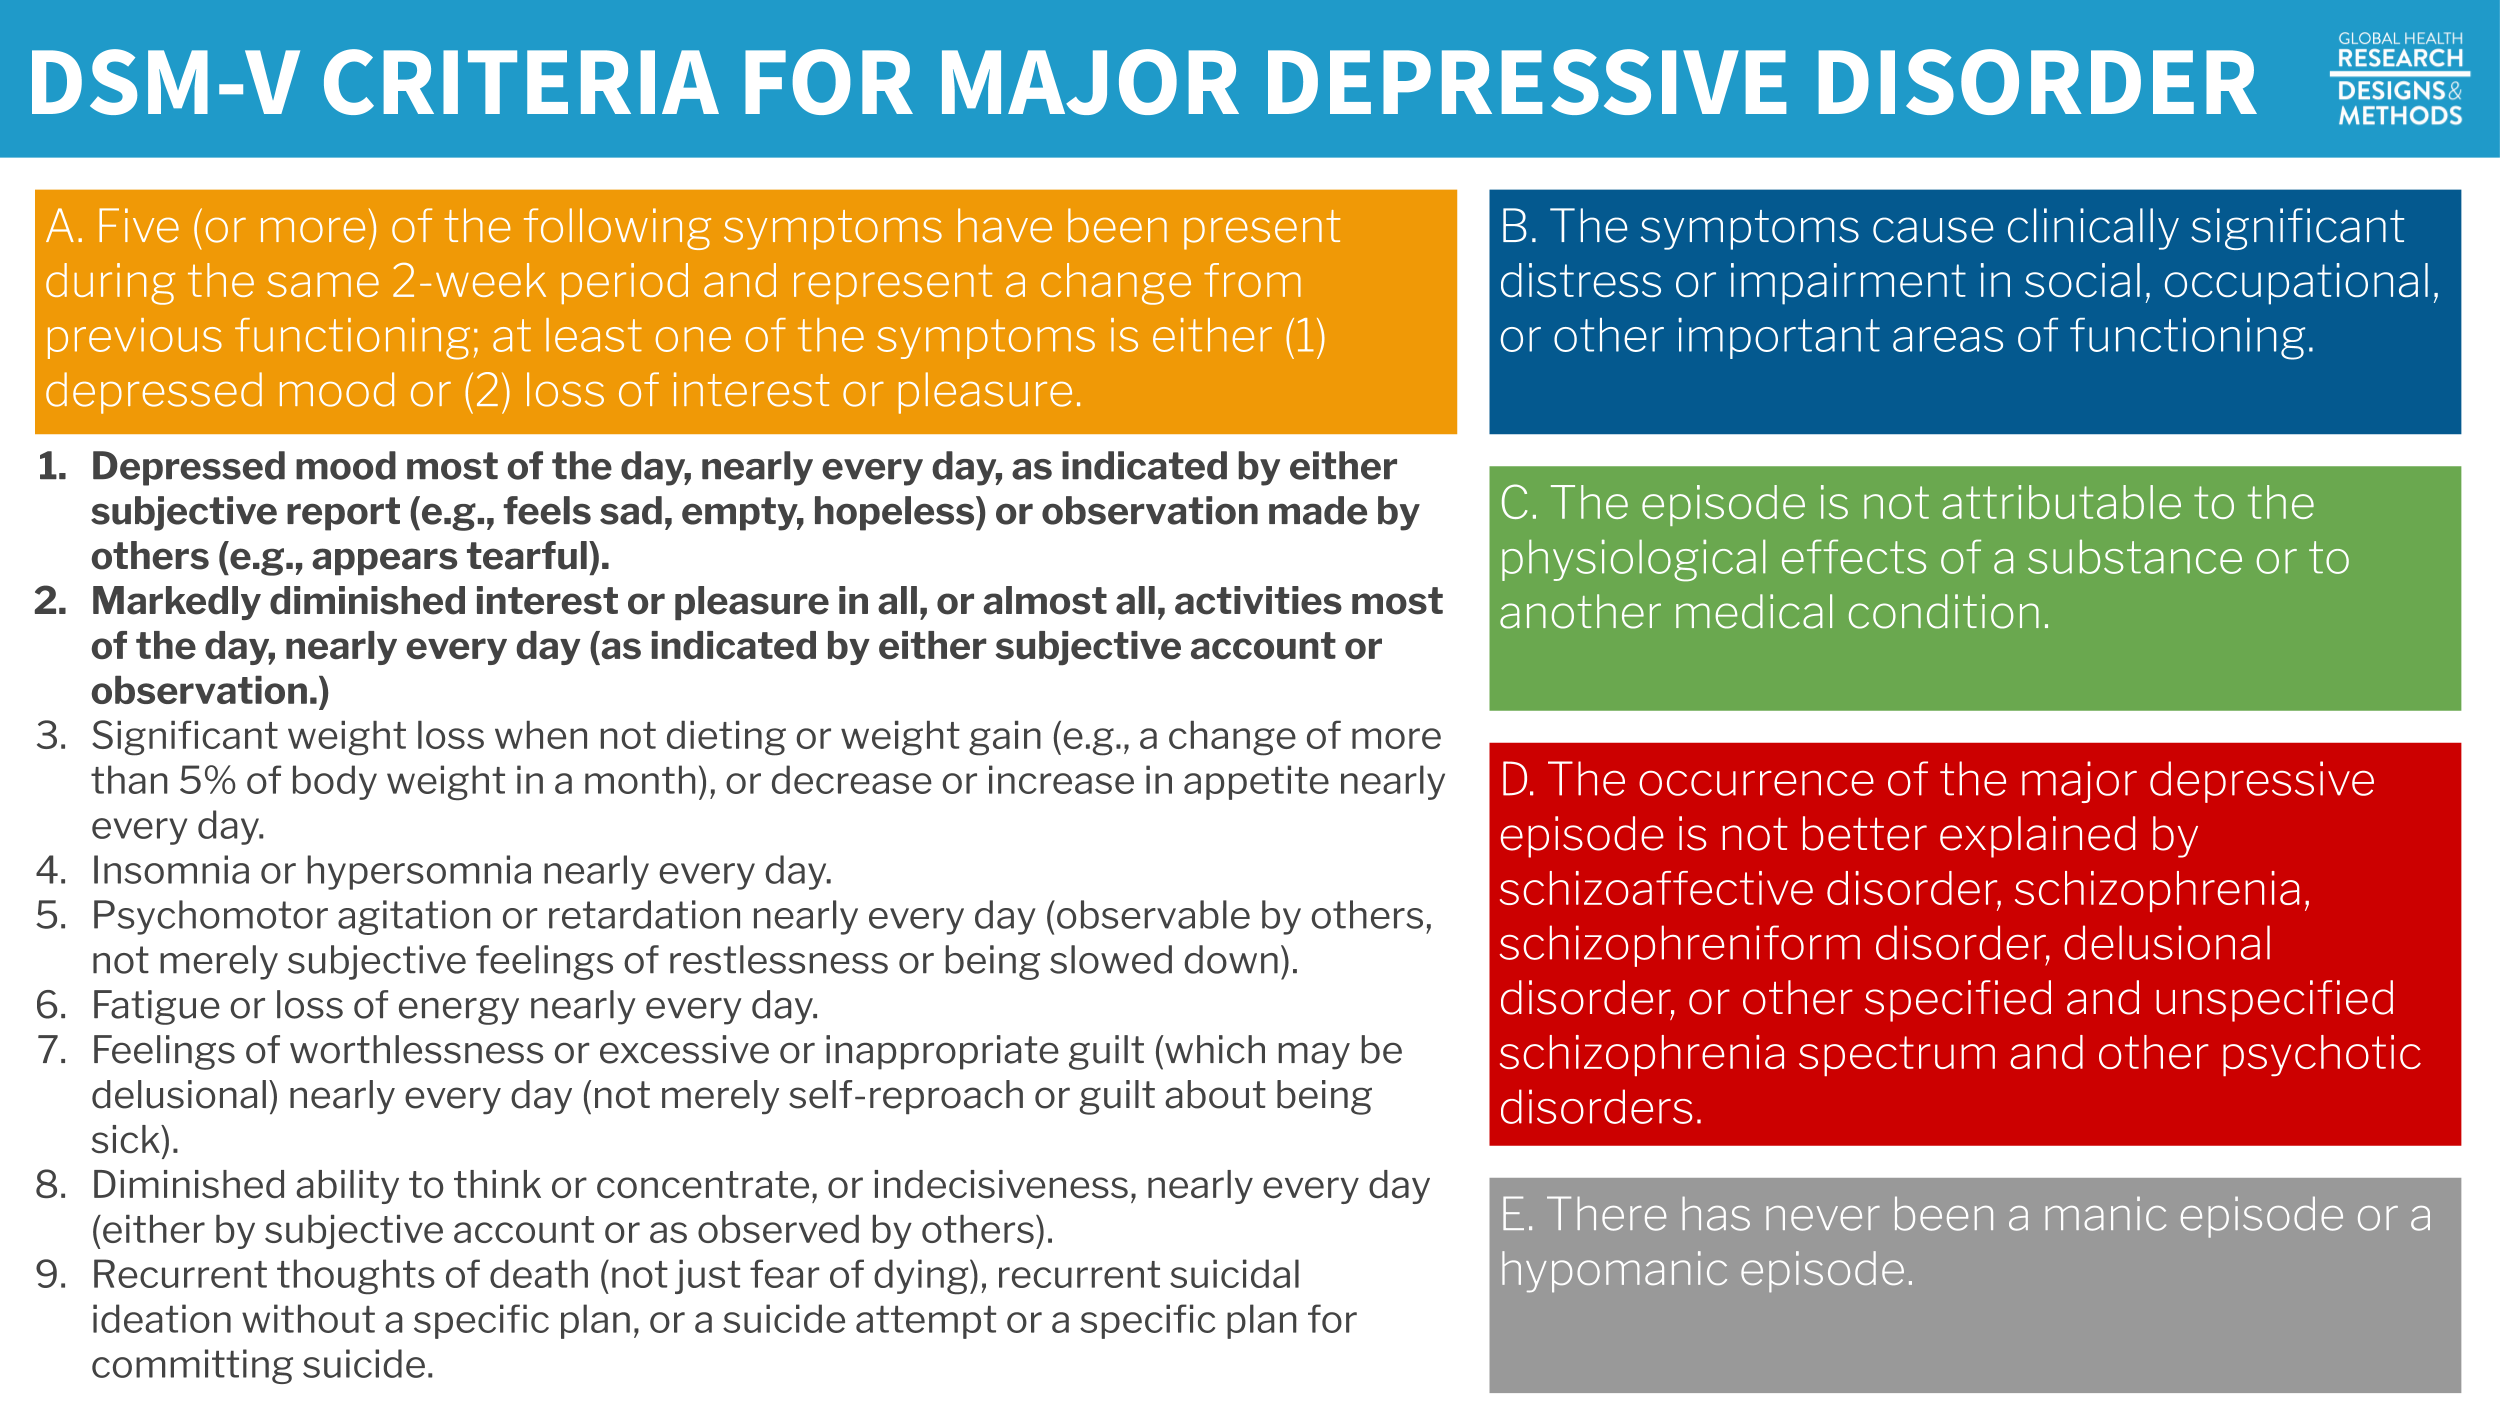 DSM-V criteria for major depressive disorder.